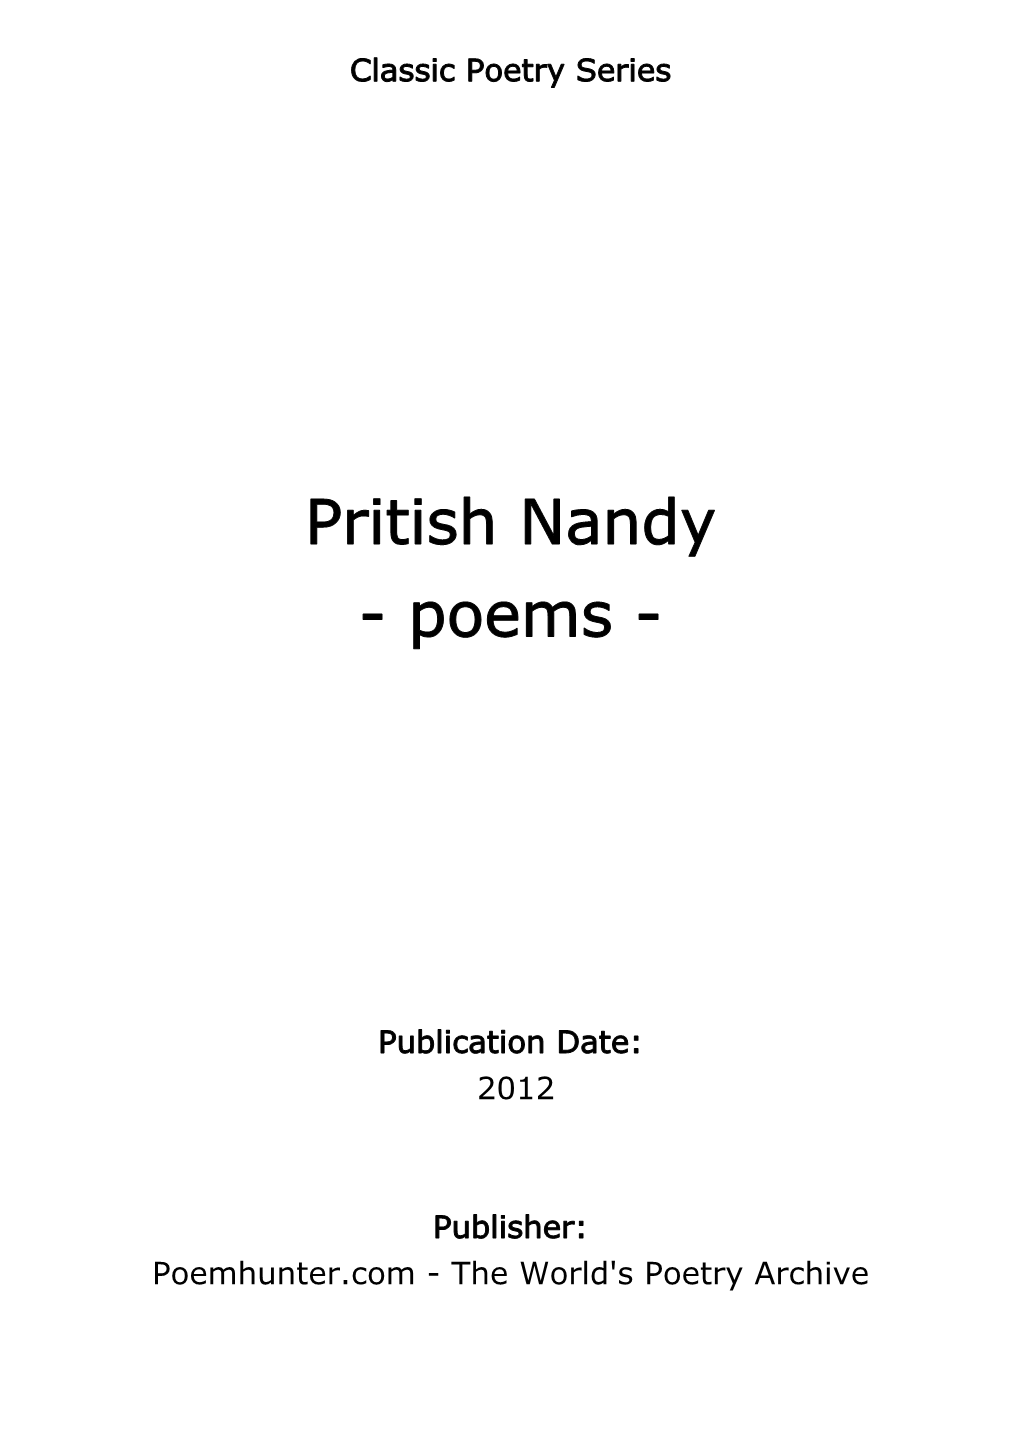 Pritish Nandy - Poems